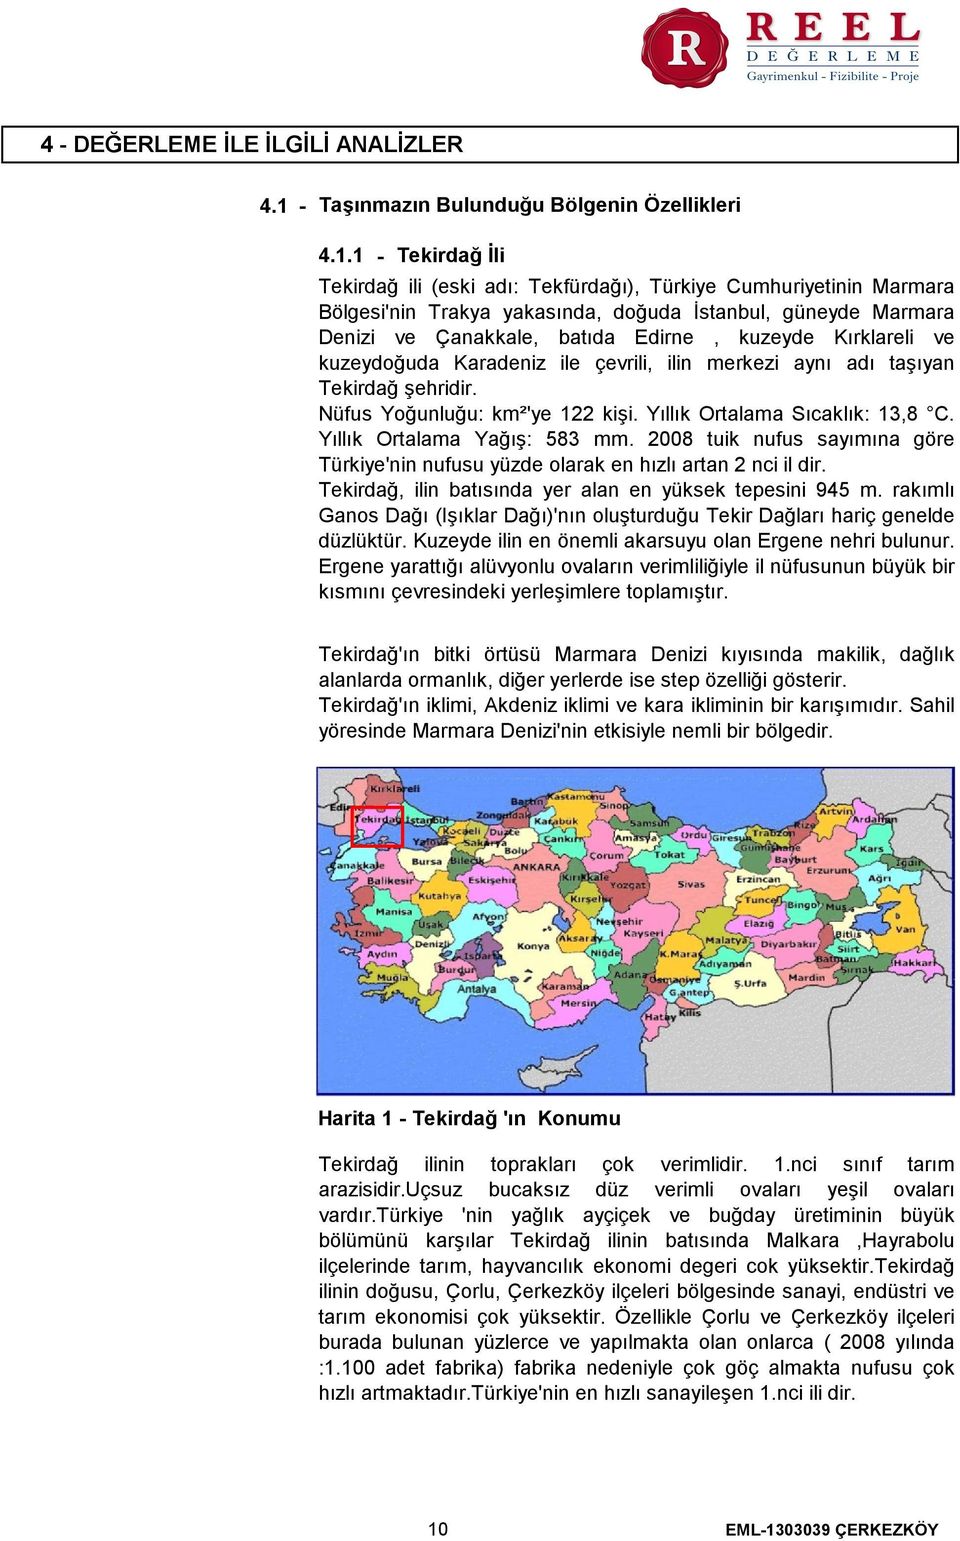 1 Tekirdağ İli Tekirdağ ili (eski adı Tekfürdağı), Türkiye Cumhuriyetinin Marmara Bölgesi'nin Trakya yakasında, doğuda İstanbul, güneyde Marmara Denizi ve Çanakkale, batıda Edirne, kuzeyde Kırklareli